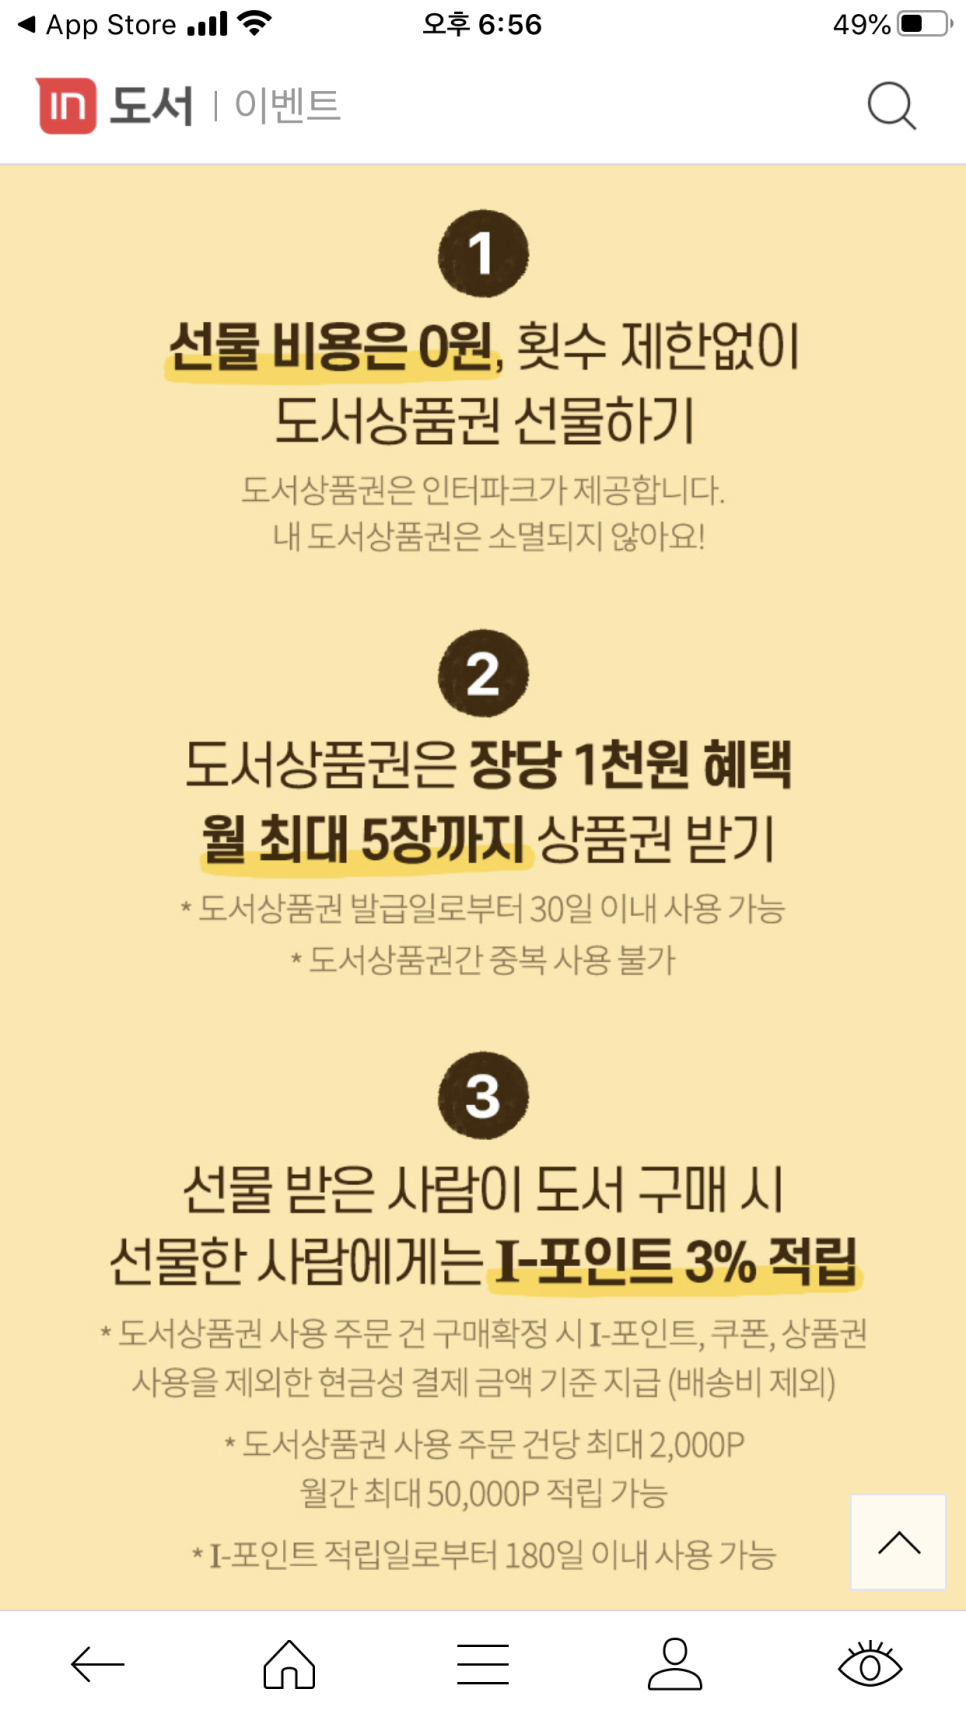 인터파크도서 상품권 선물하기로 방구석 미술관 2-한국 새해 선물로!